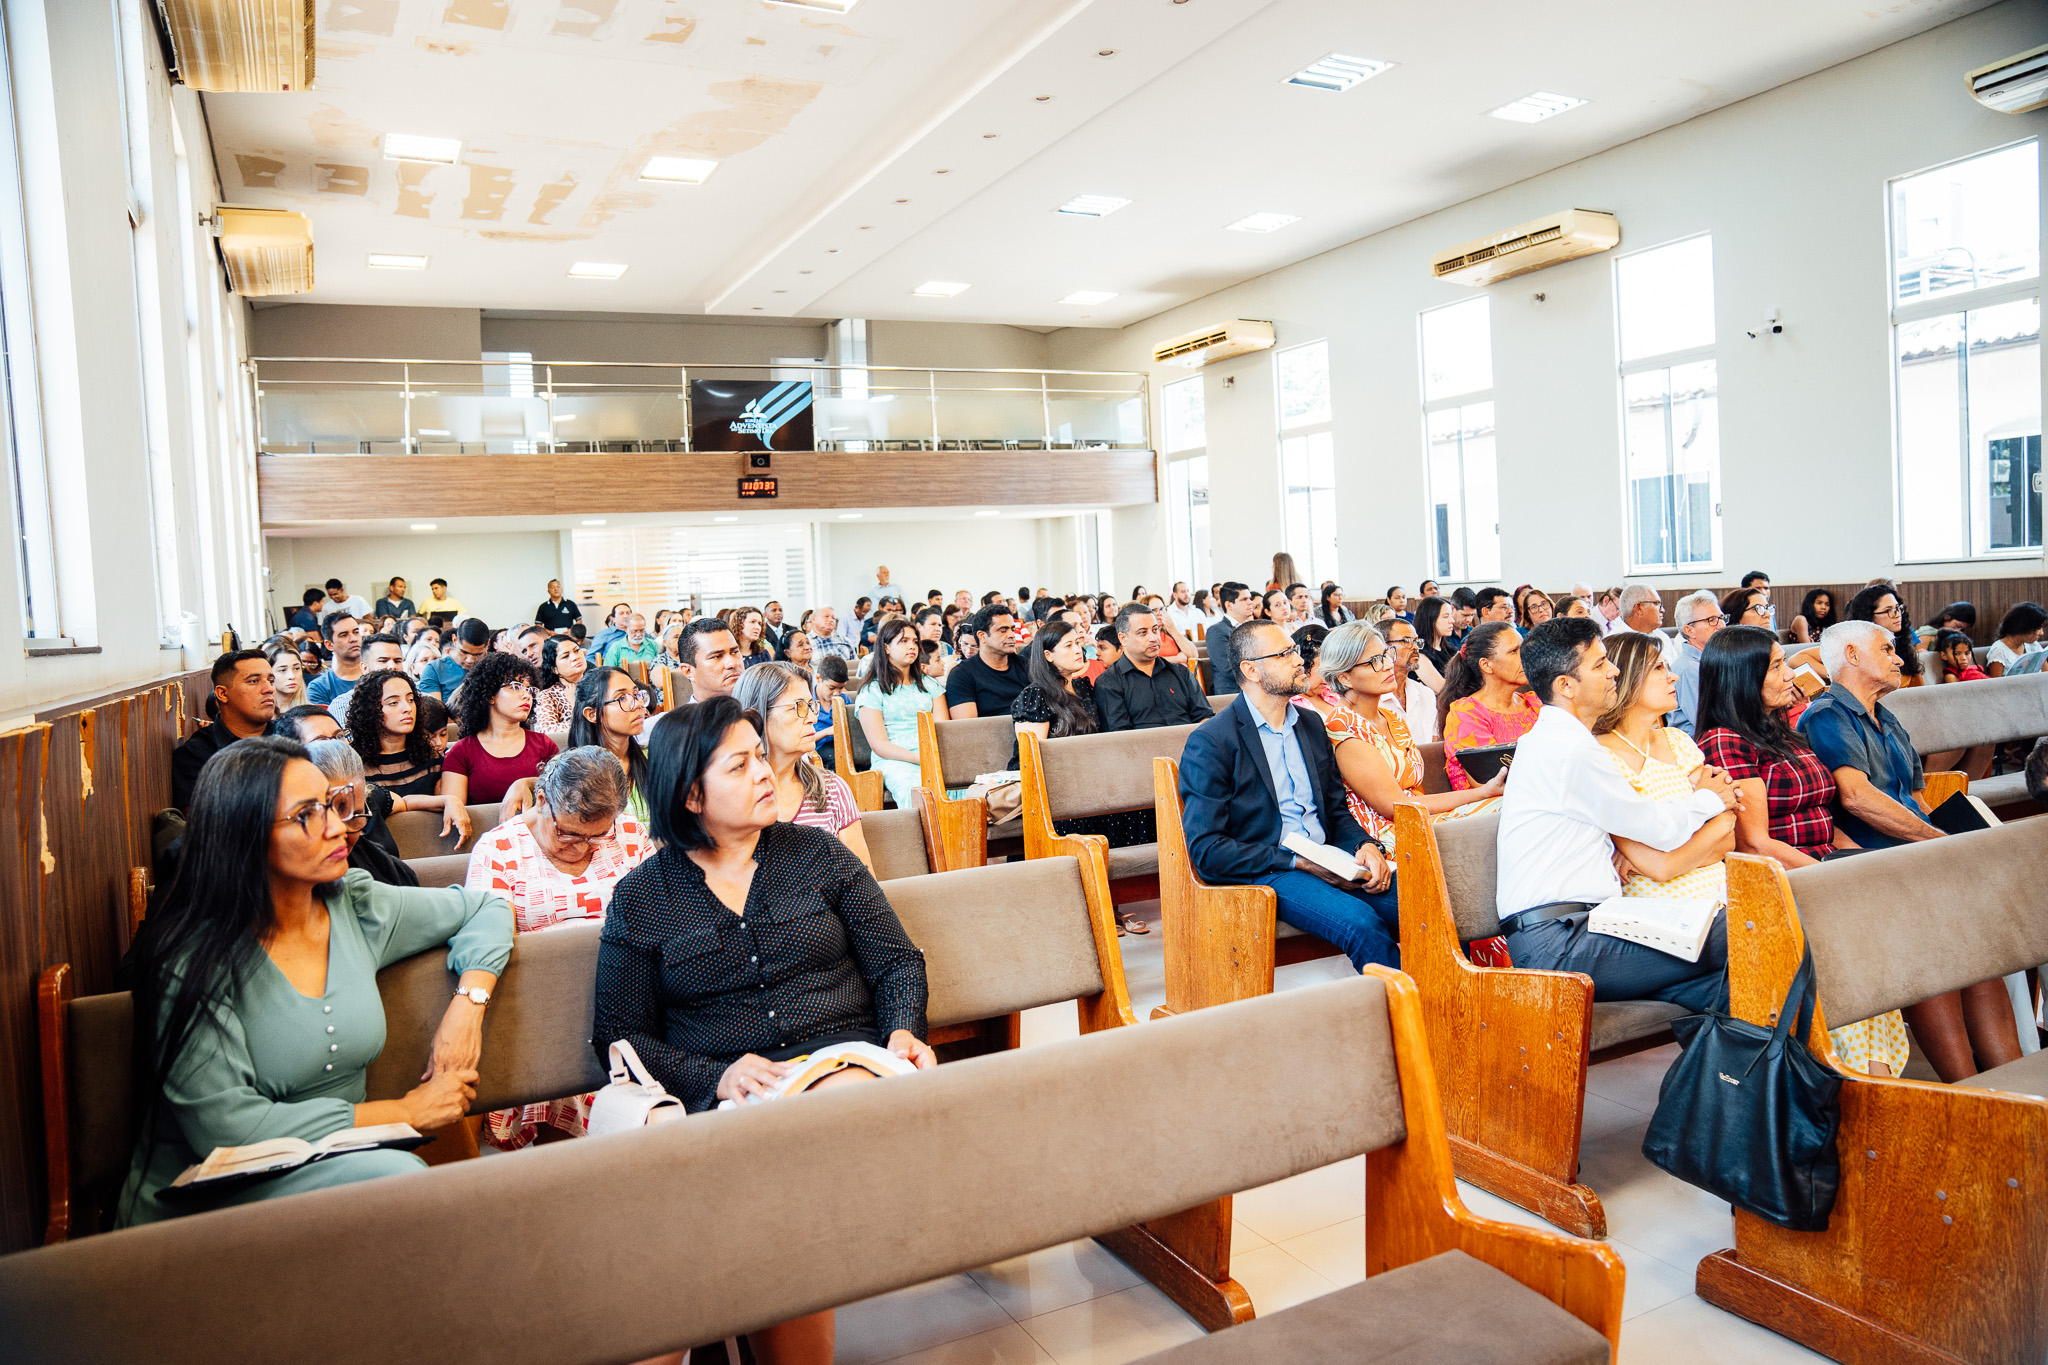 Programa “ADORE” é realizado em 52 igrejas das regiões central e sul do estado